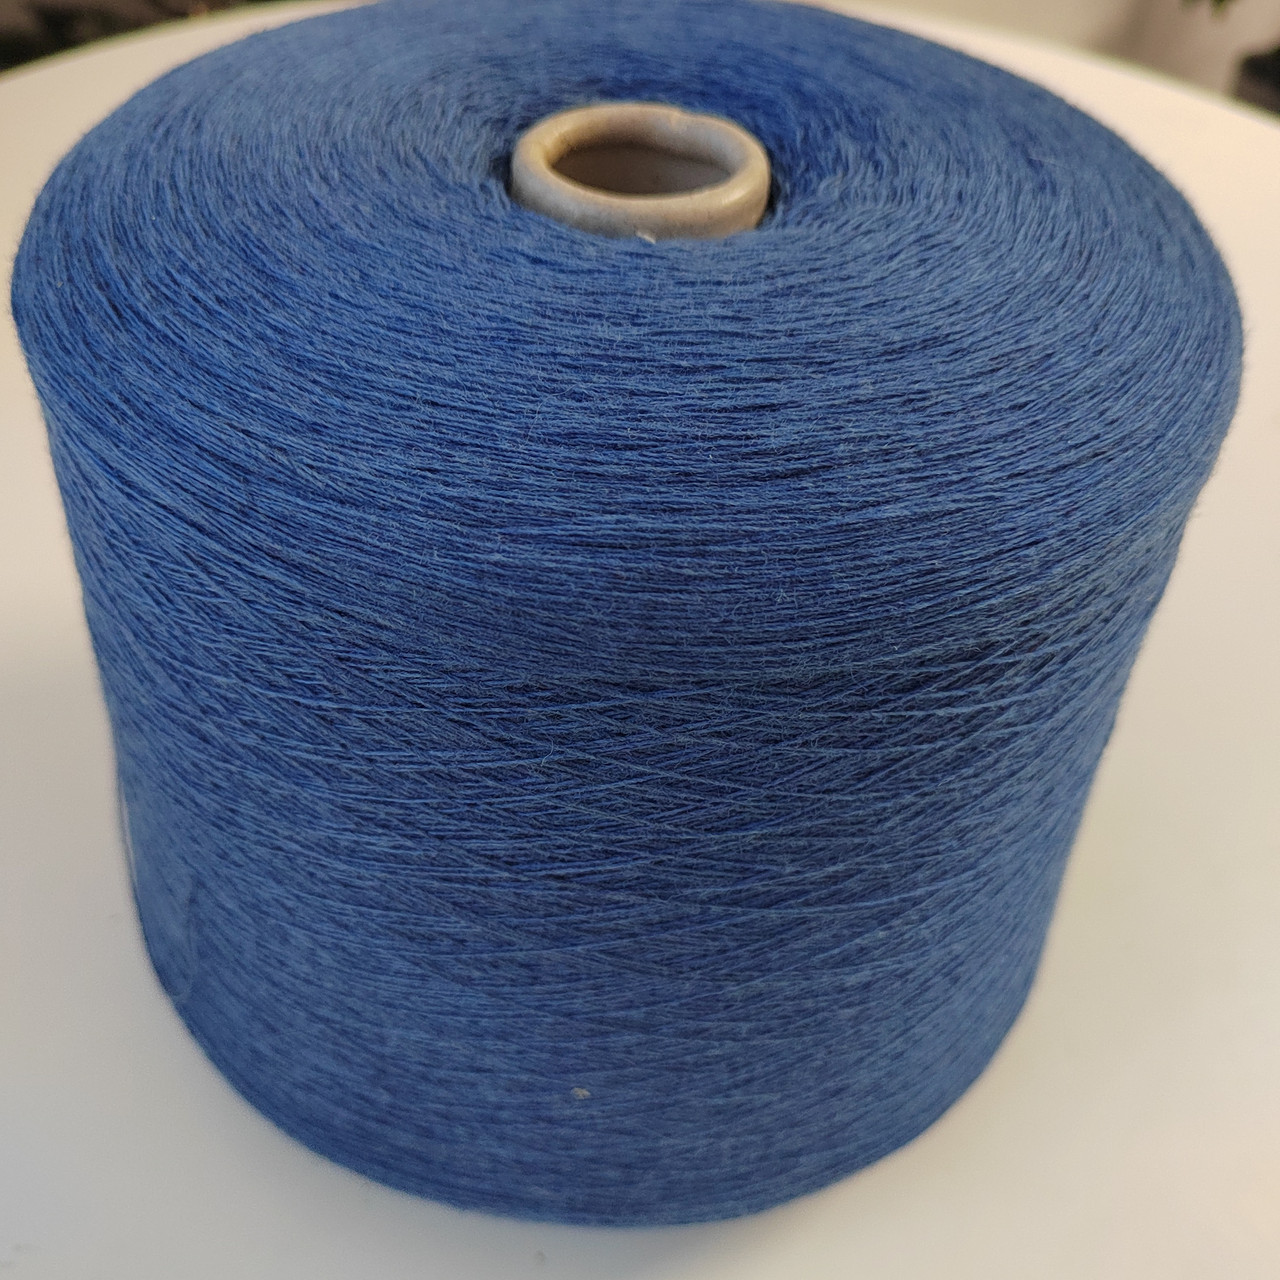 Пряжа Lambswool, art.Scozia 100% шерсть ягнят, 1500 м 100г цвет: голубой джинс